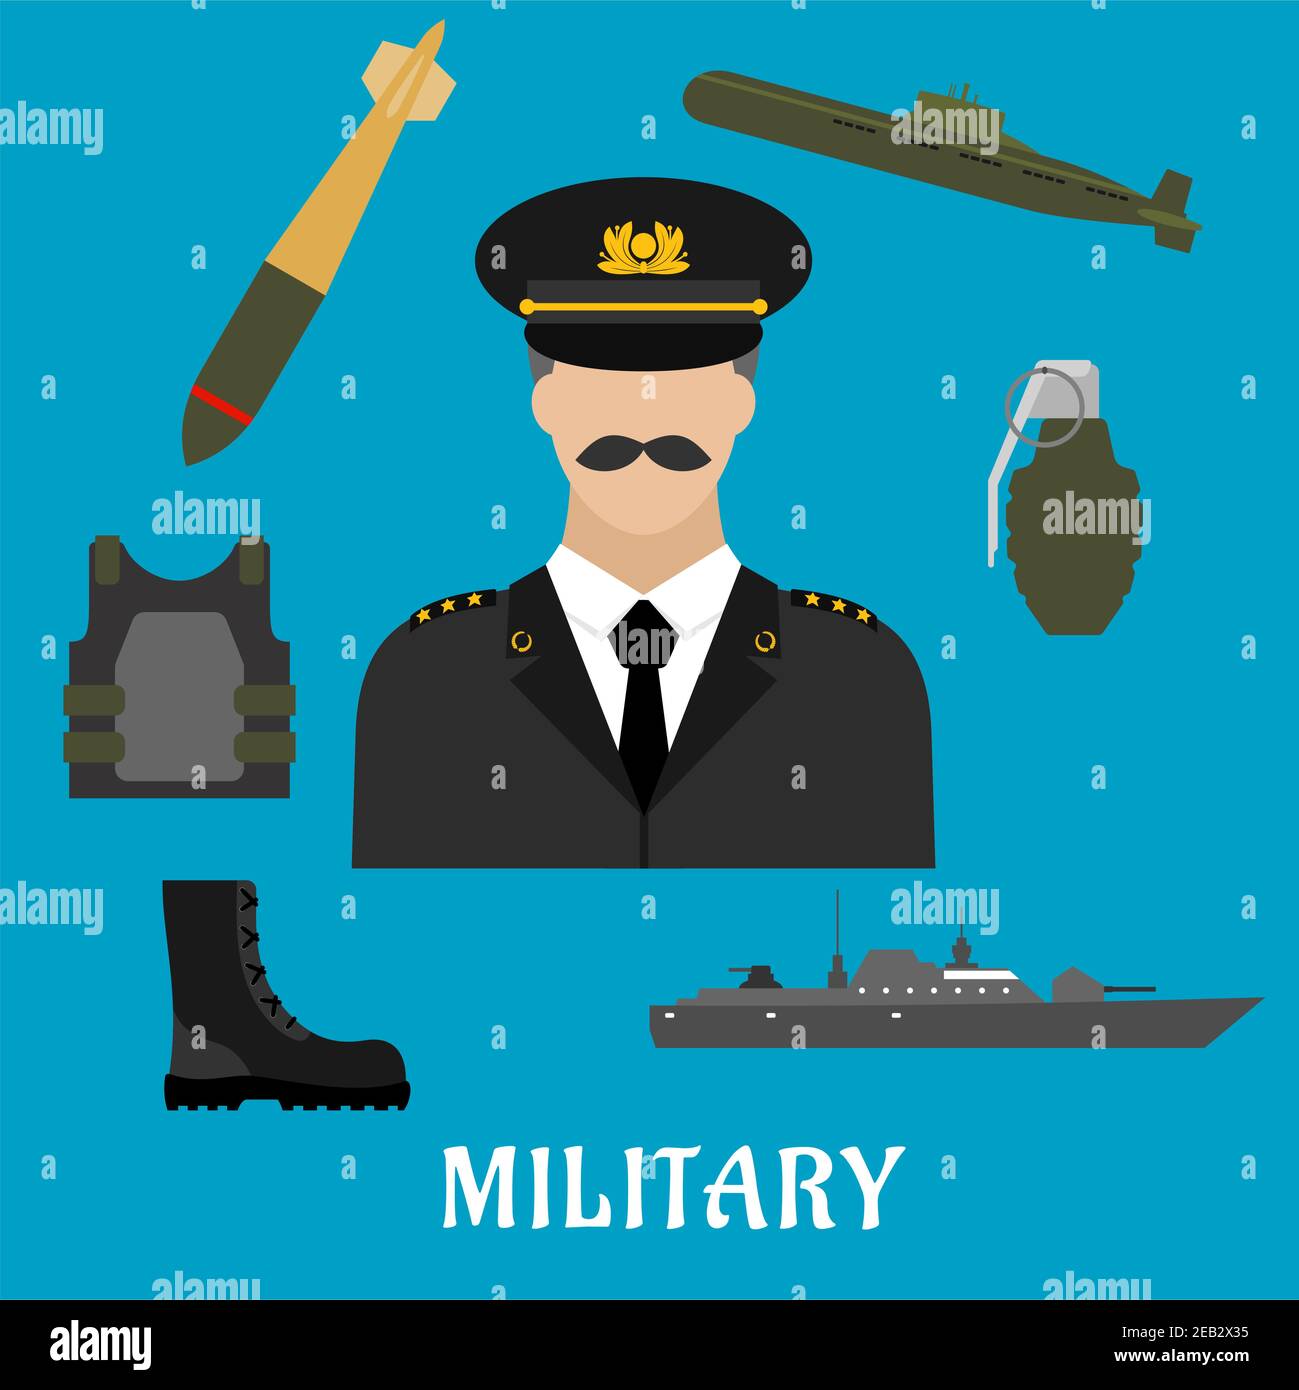 Militärberuf flache Ikonen mit Schnurrbart Mann in Uniform, umgeben von Körper Rüstung, Armeestiefel, Handgranate, U-Boot, Kampfschiff und Torpedo Stock Vektor